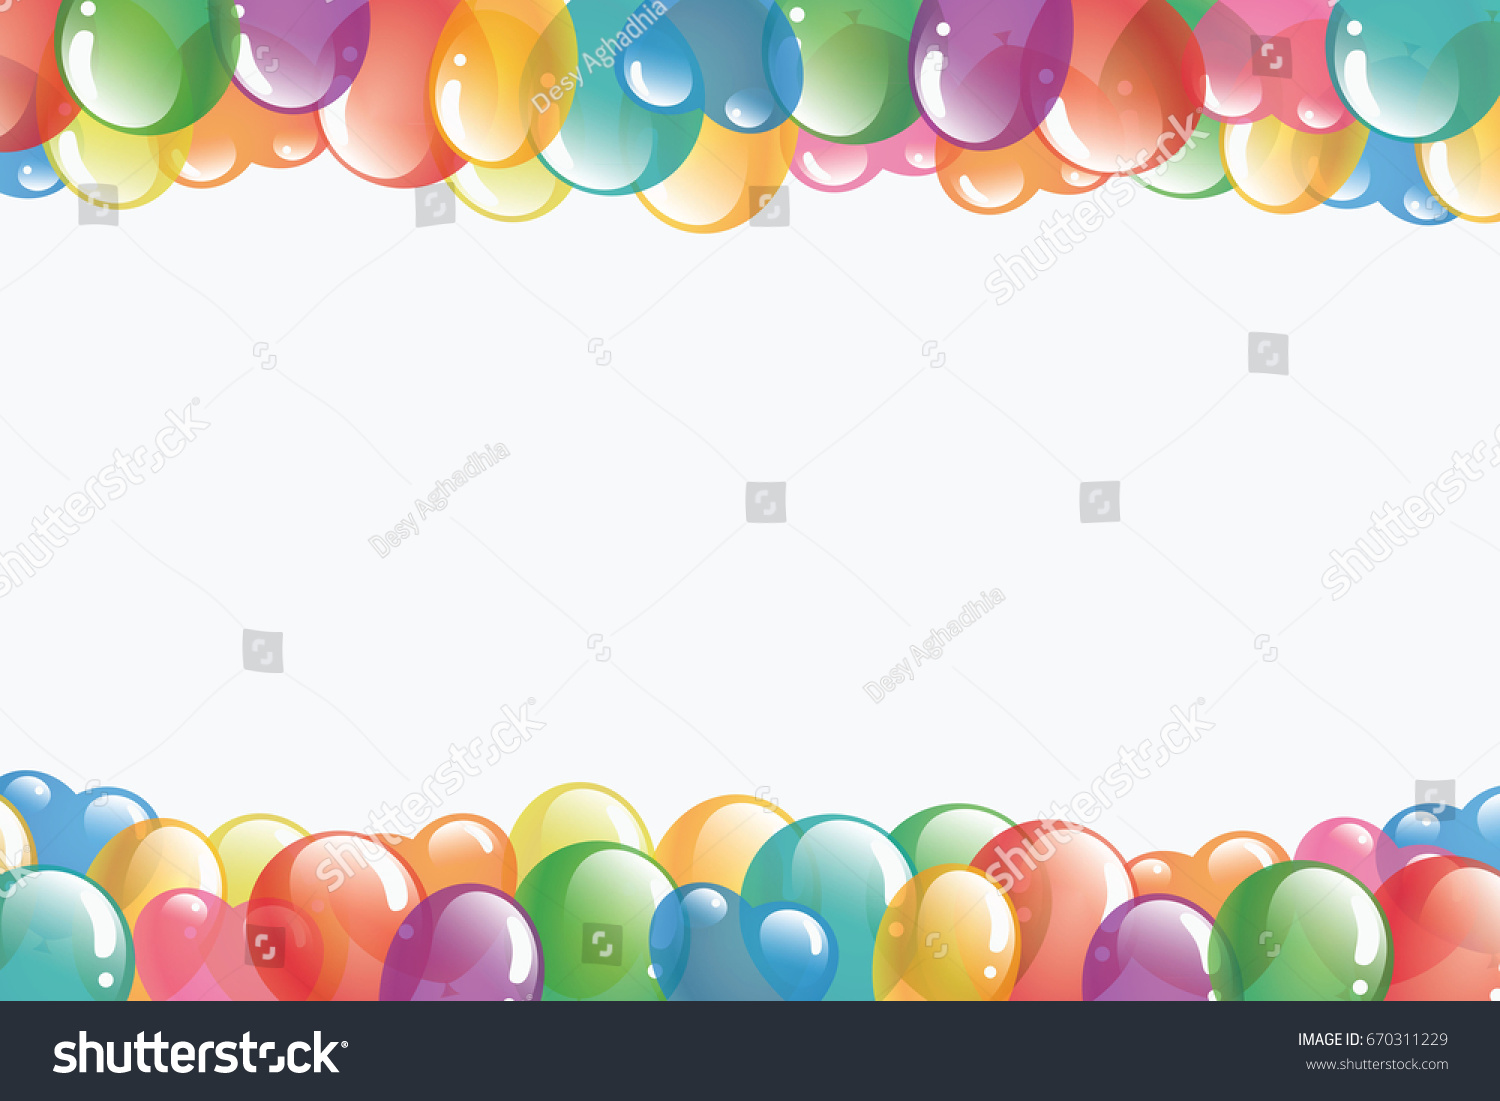 Рамка для текста разноцветные шарики